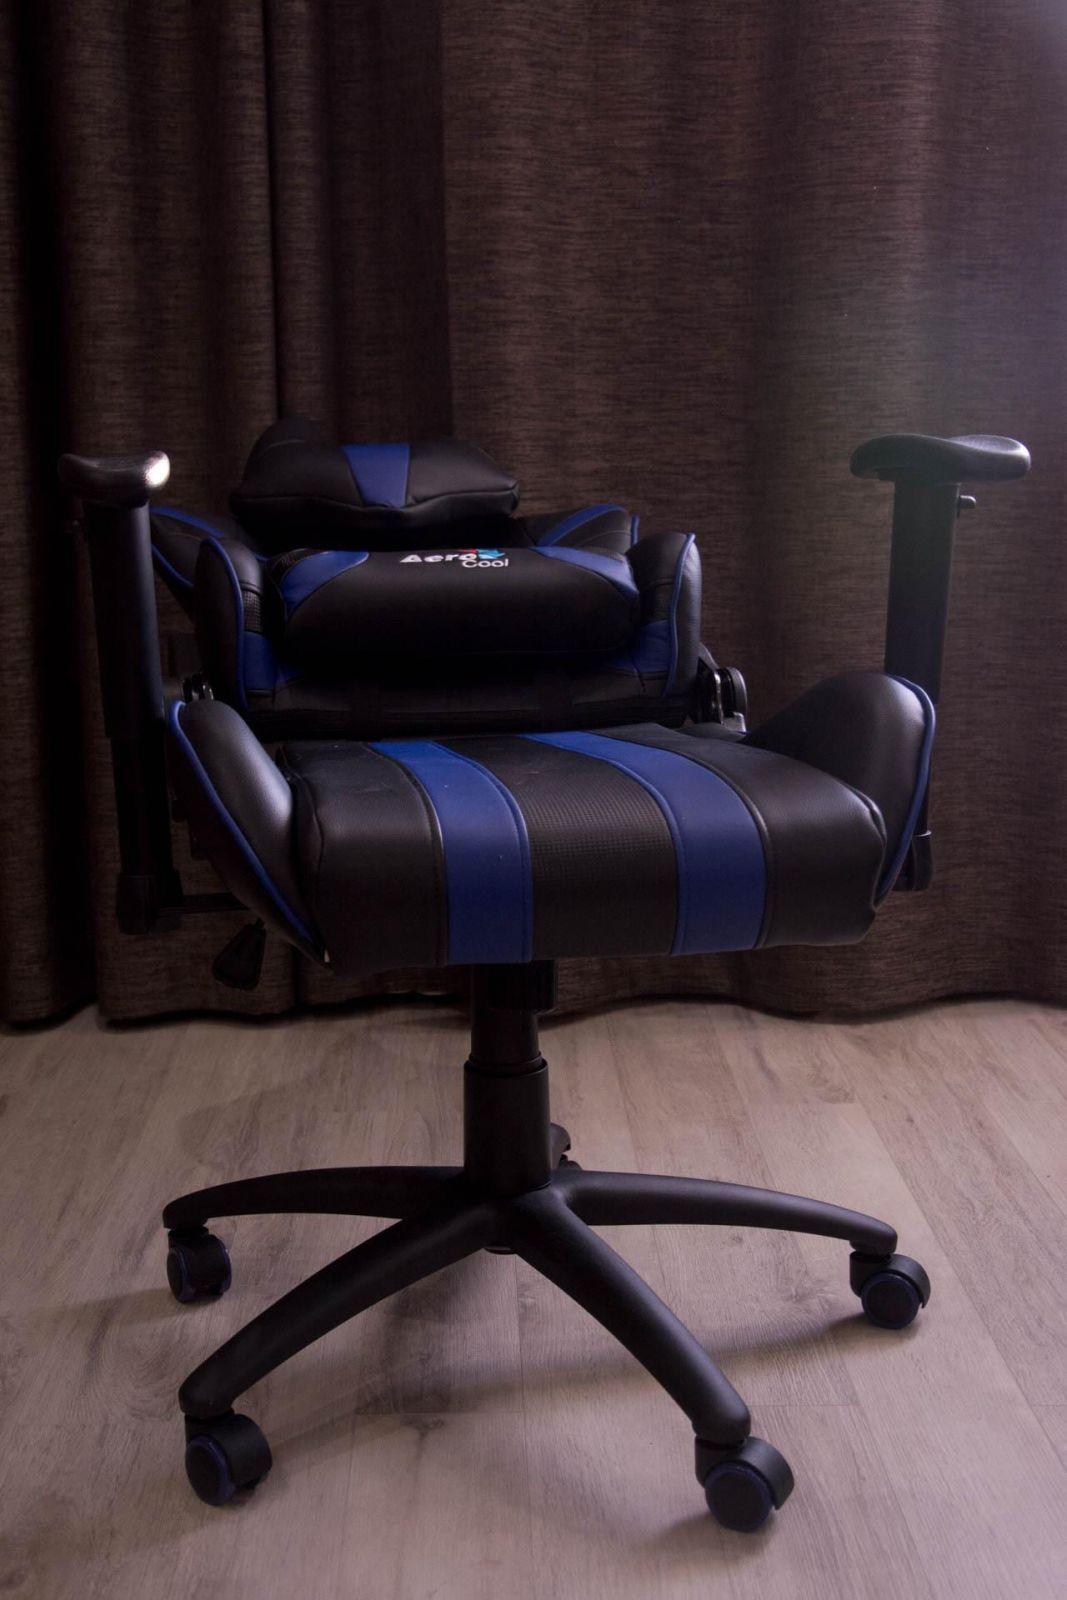 Геймерский трон. Обзор кресла AeroCool AC120 (DSC 4029)